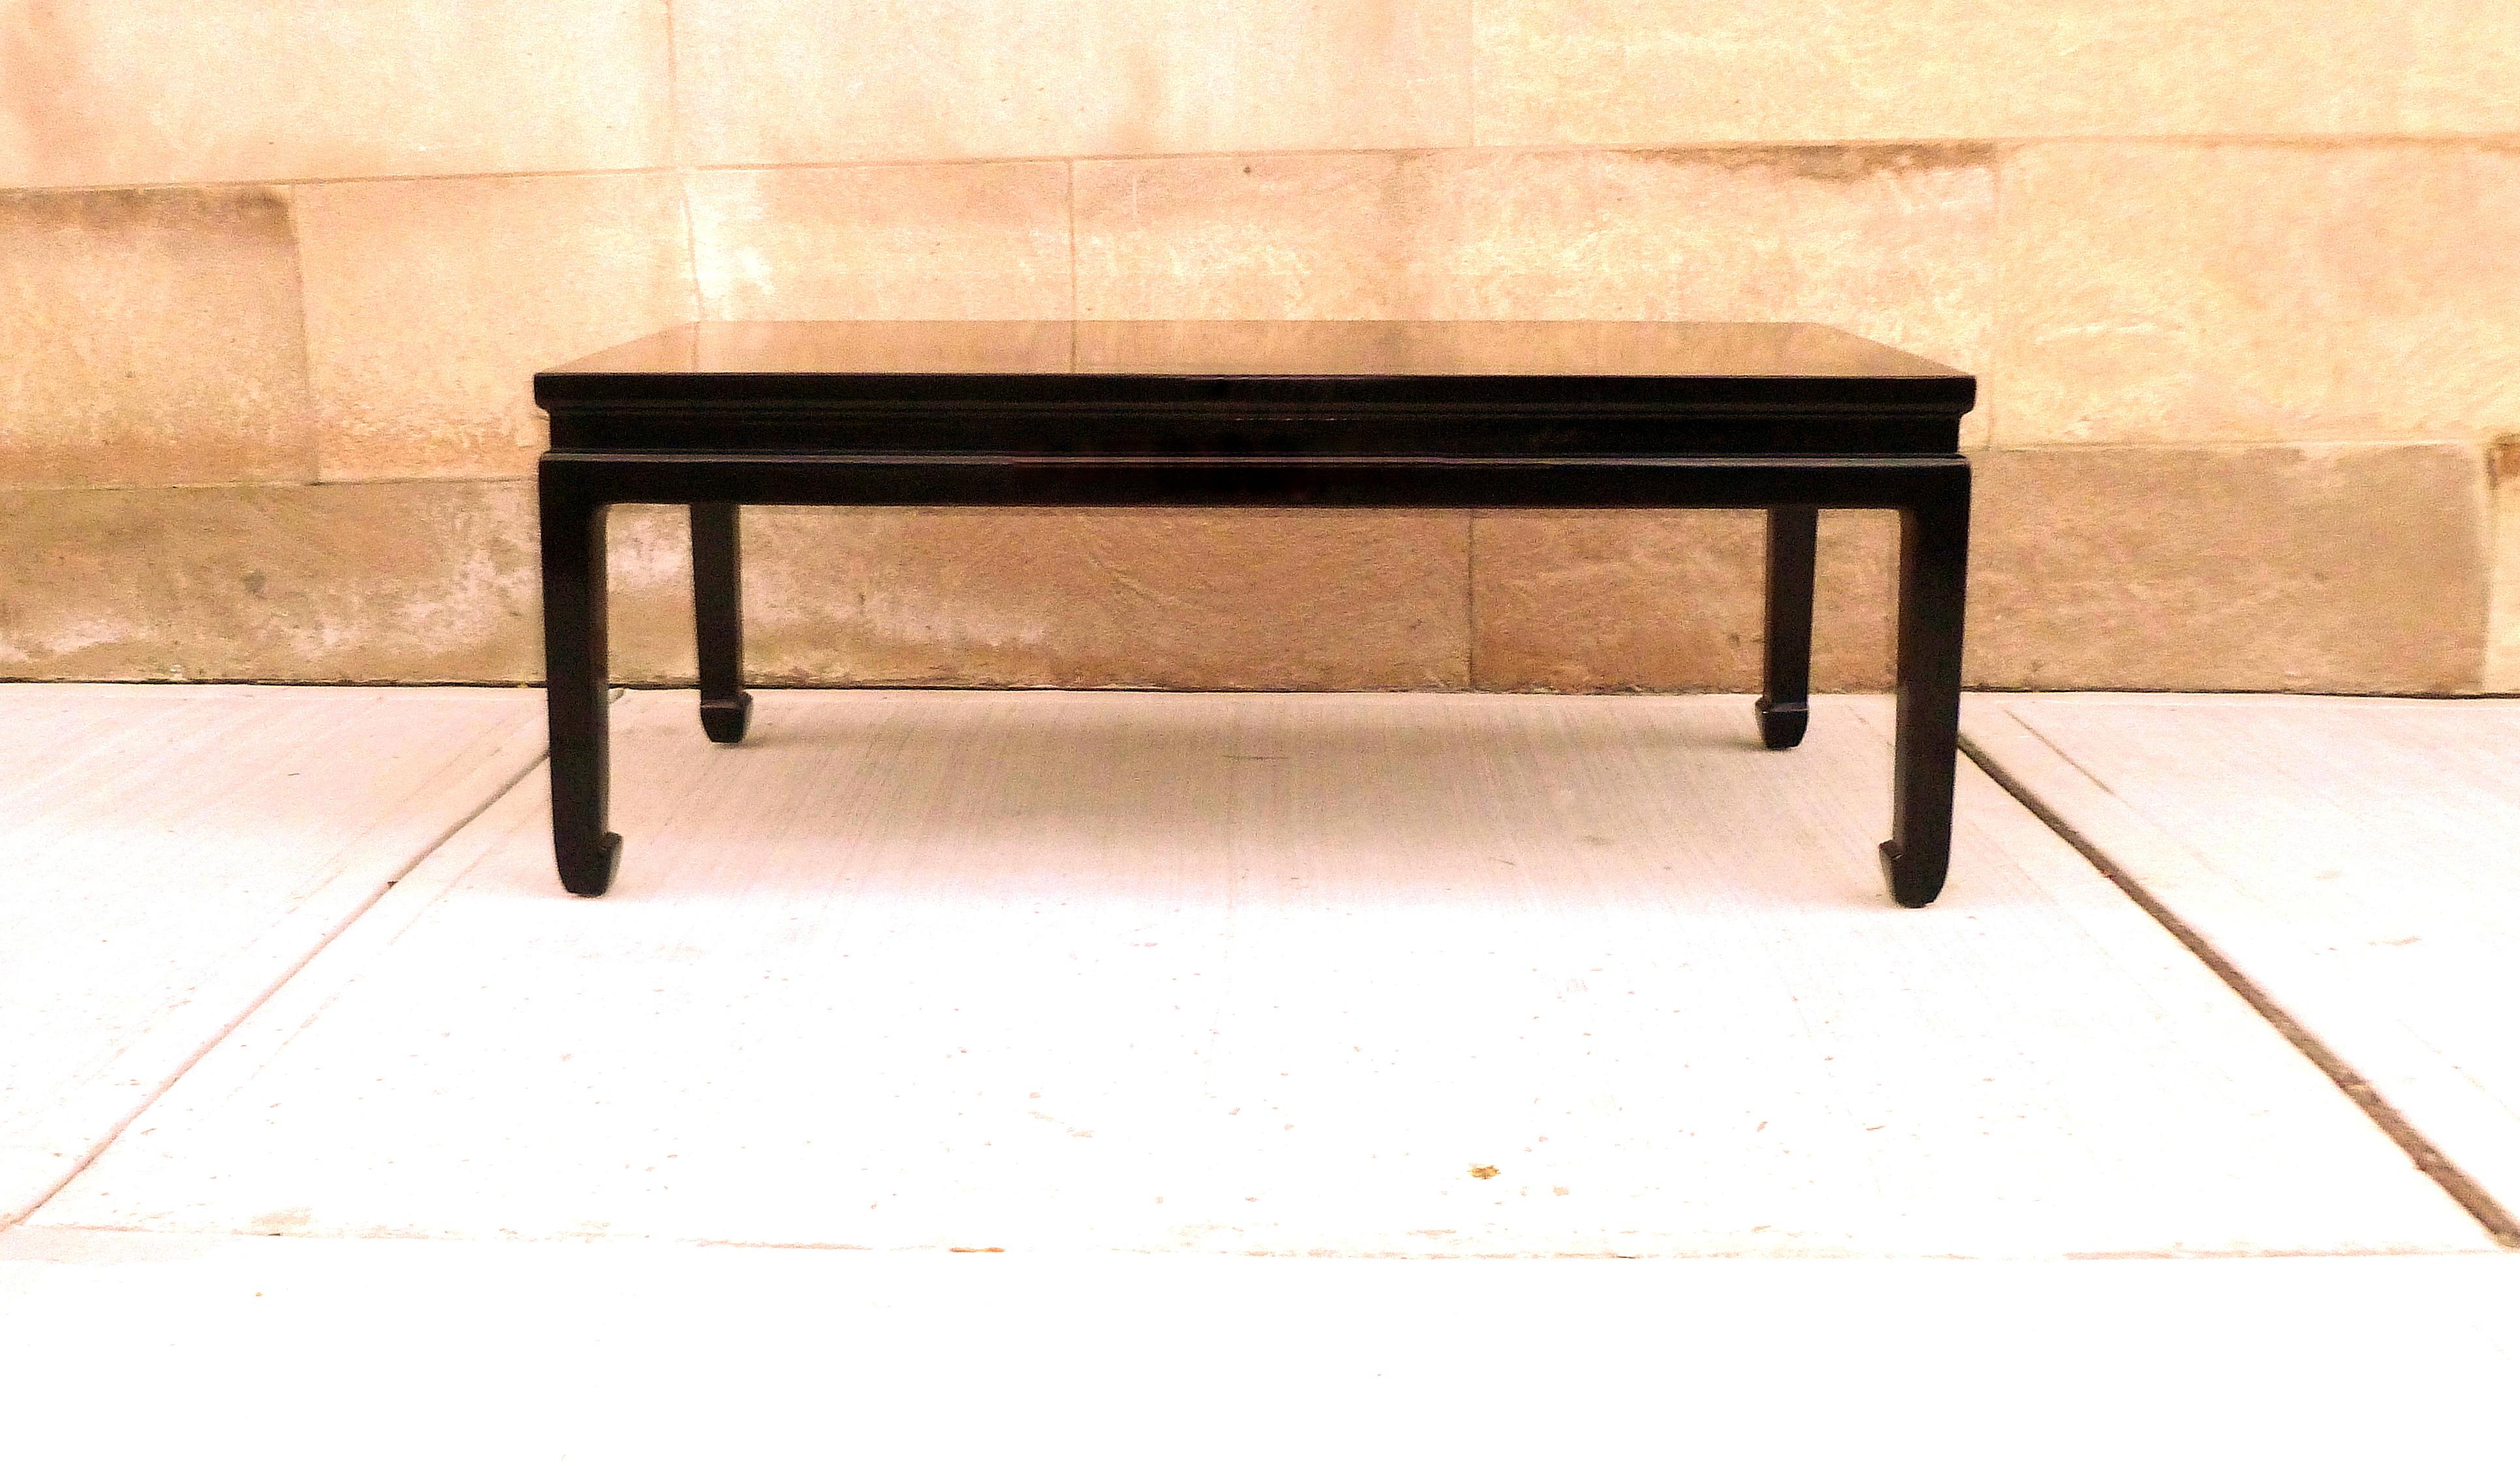 Ein eleganter, schwarz lackierter, rechteckiger, niedriger Tisch mit vergoldeter Landschaftsplatte.
einfache und schöne Form. Wir führen Möbel von feiner Qualität mit elegantem Finish, die bereits mehrfach in der Zeitschrift 